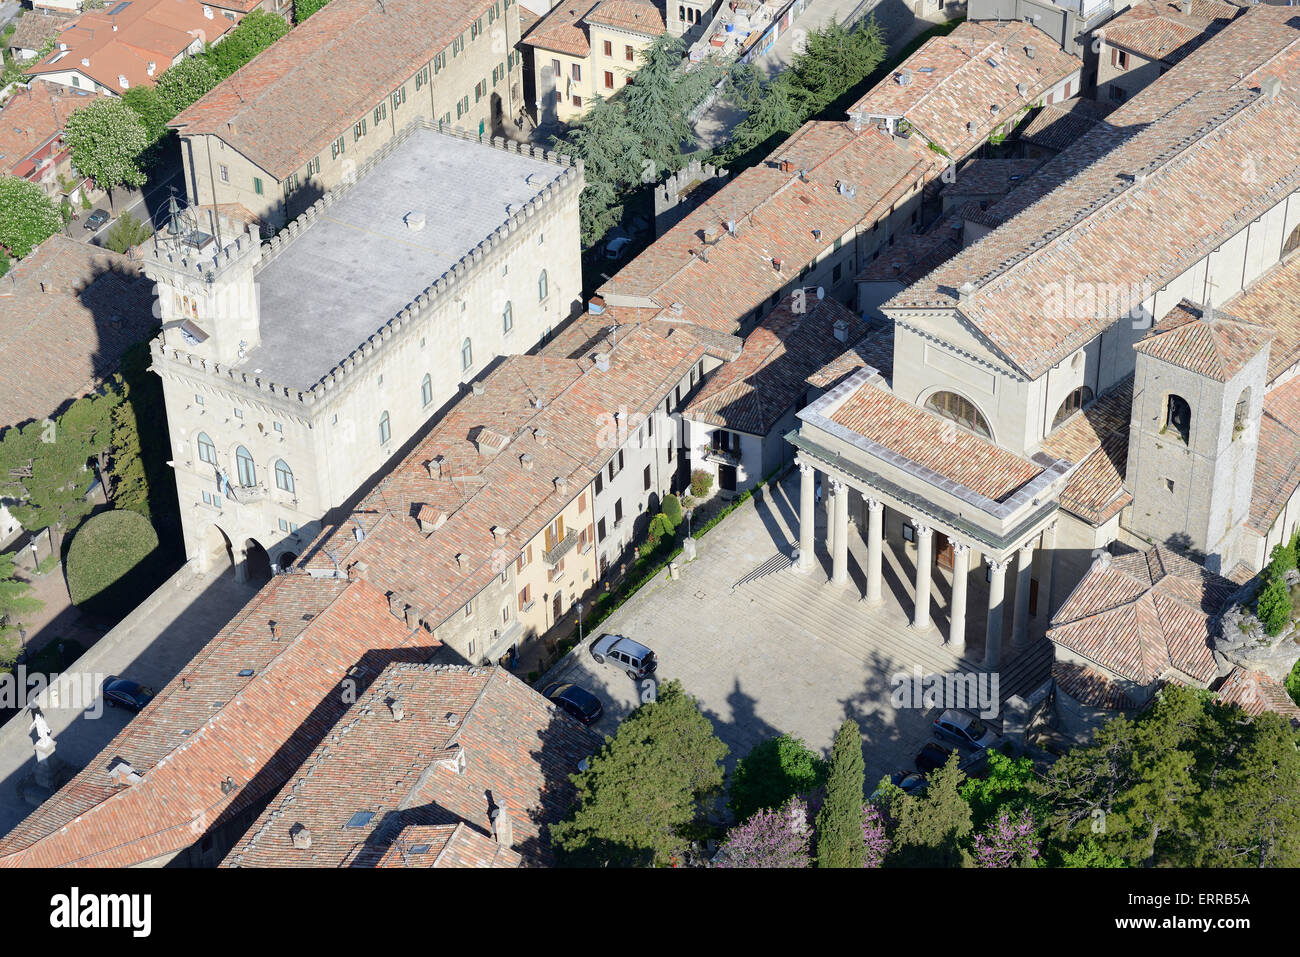 LUFTAUFNAHME. Öffentlicher Palast (linkes Gebäude - Sitz der Regierung) und Basilika St. Marinus. Stadt San Marino, Republik San Marino. Stockfoto